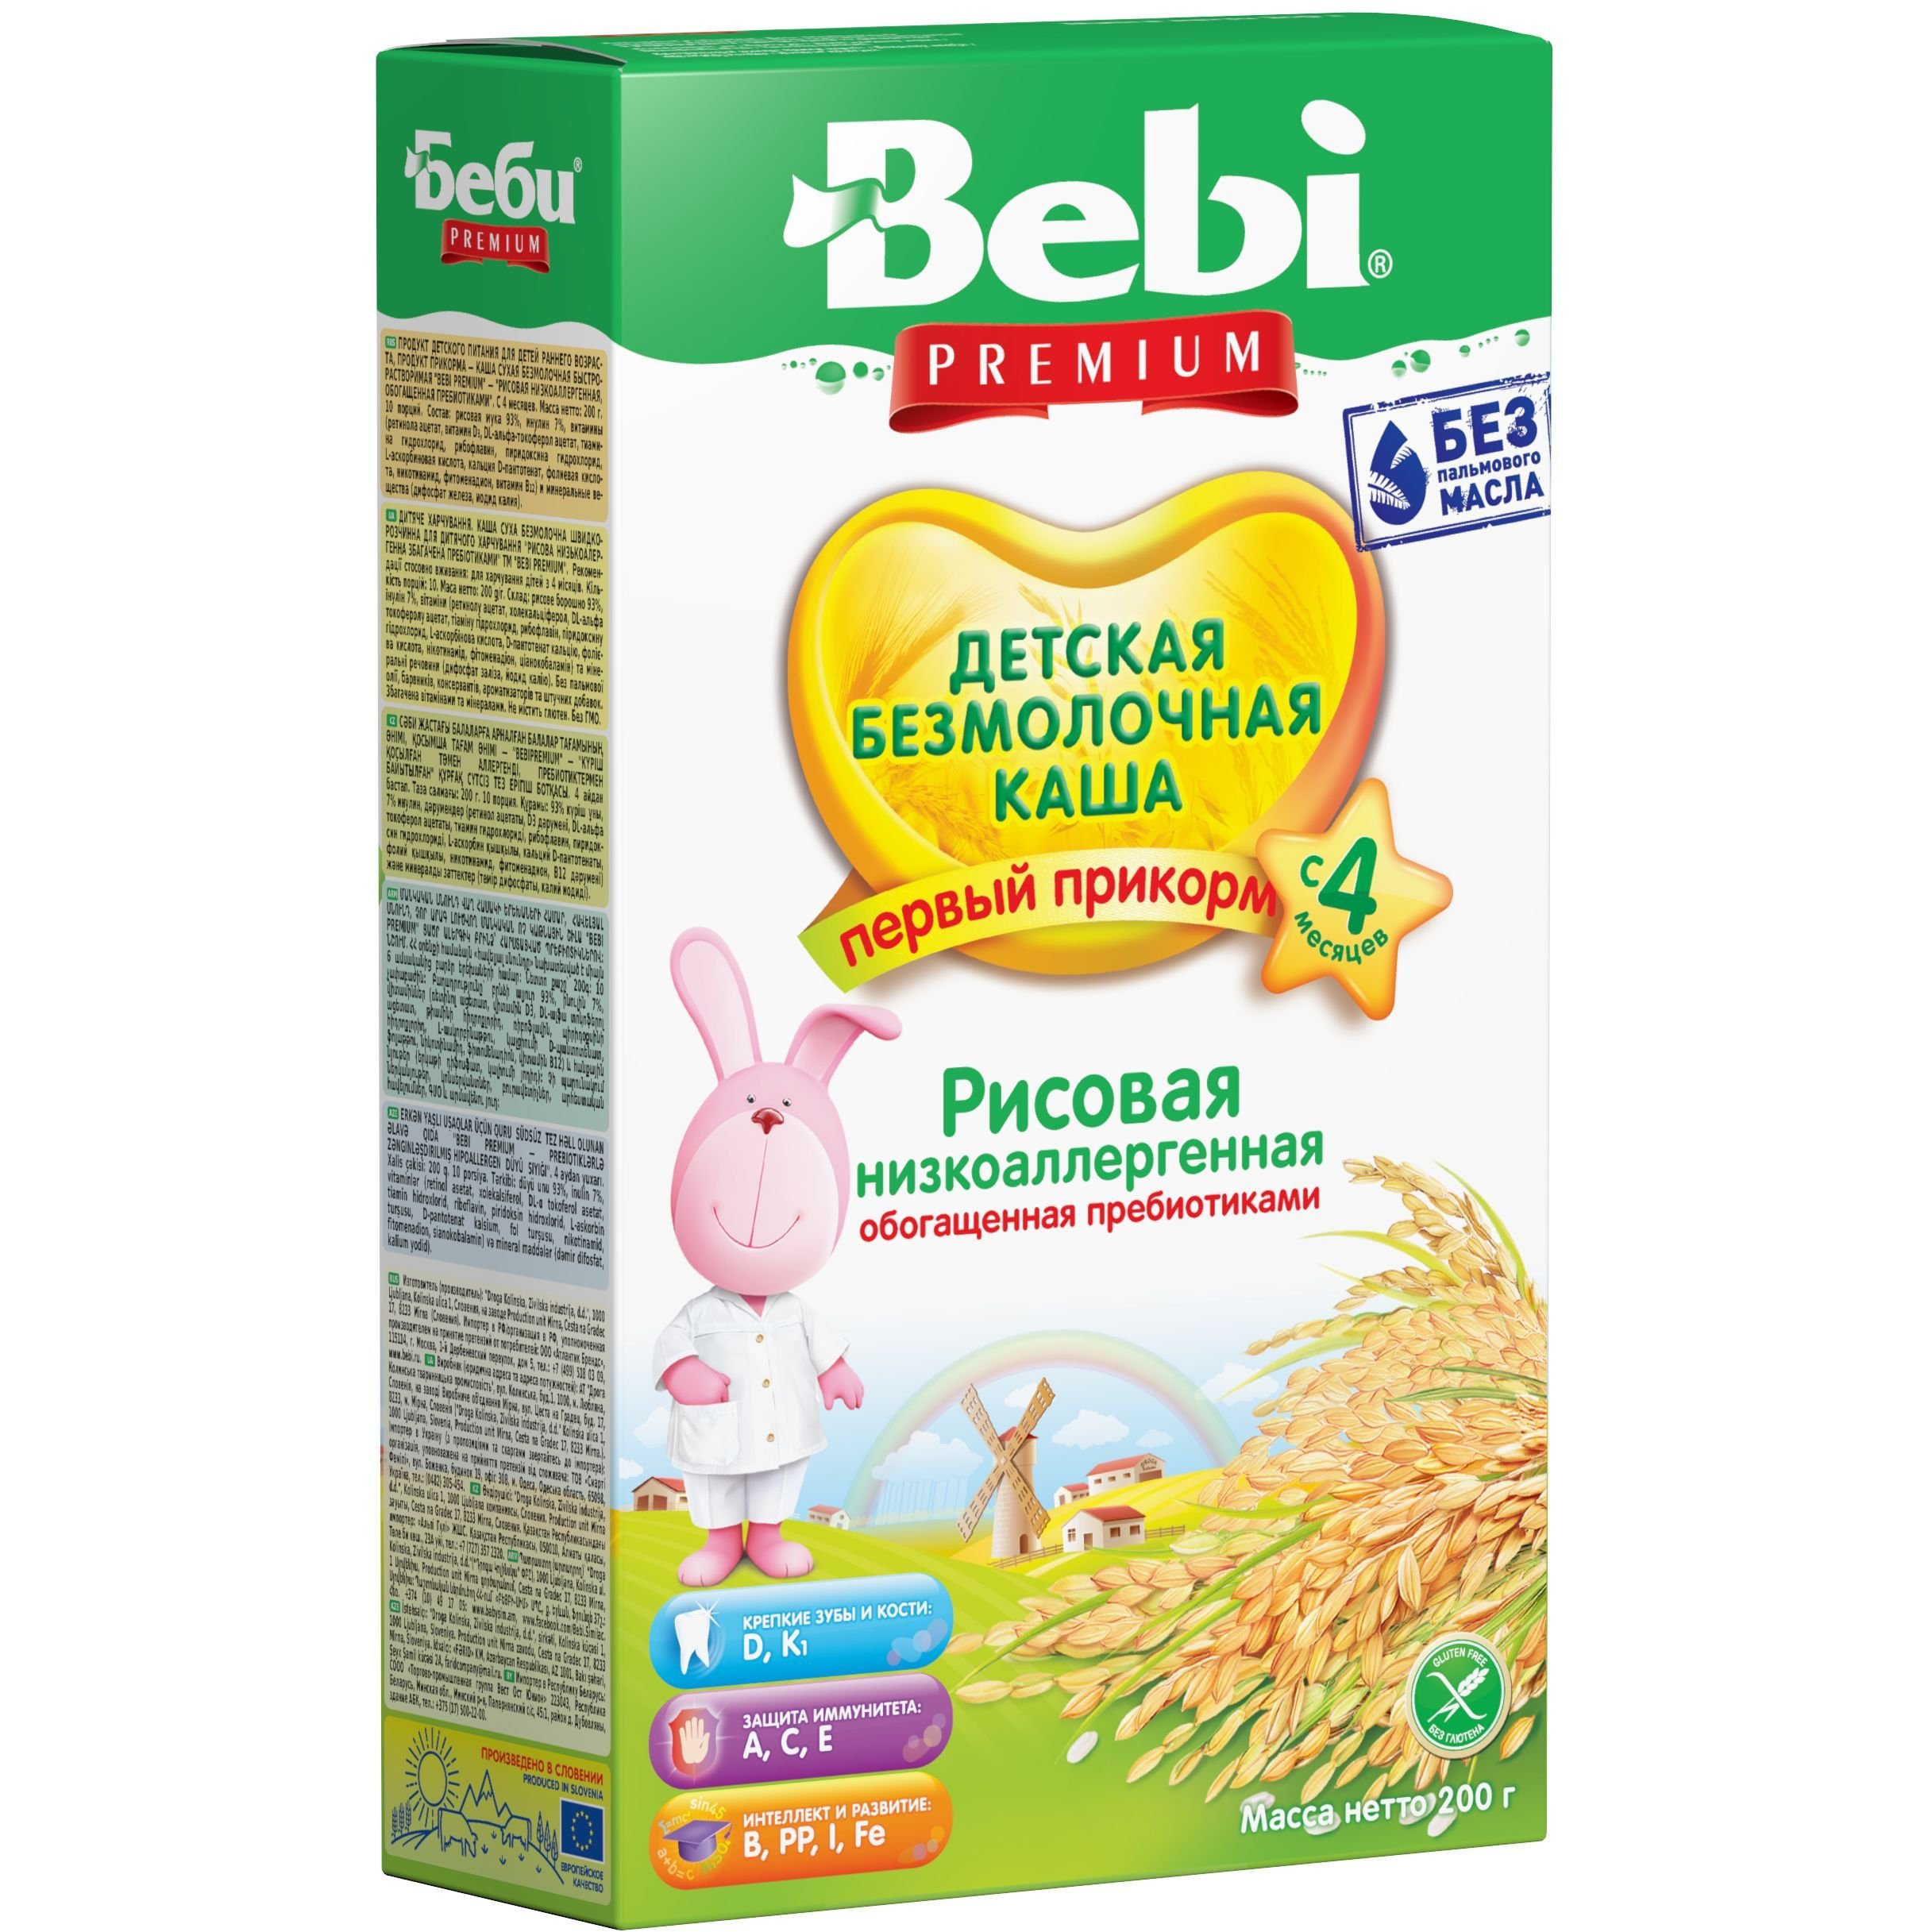 Безмолочная низкоаллергенная каша Bebi Premium Рисовая с пребиотиками 200 г - фото 1